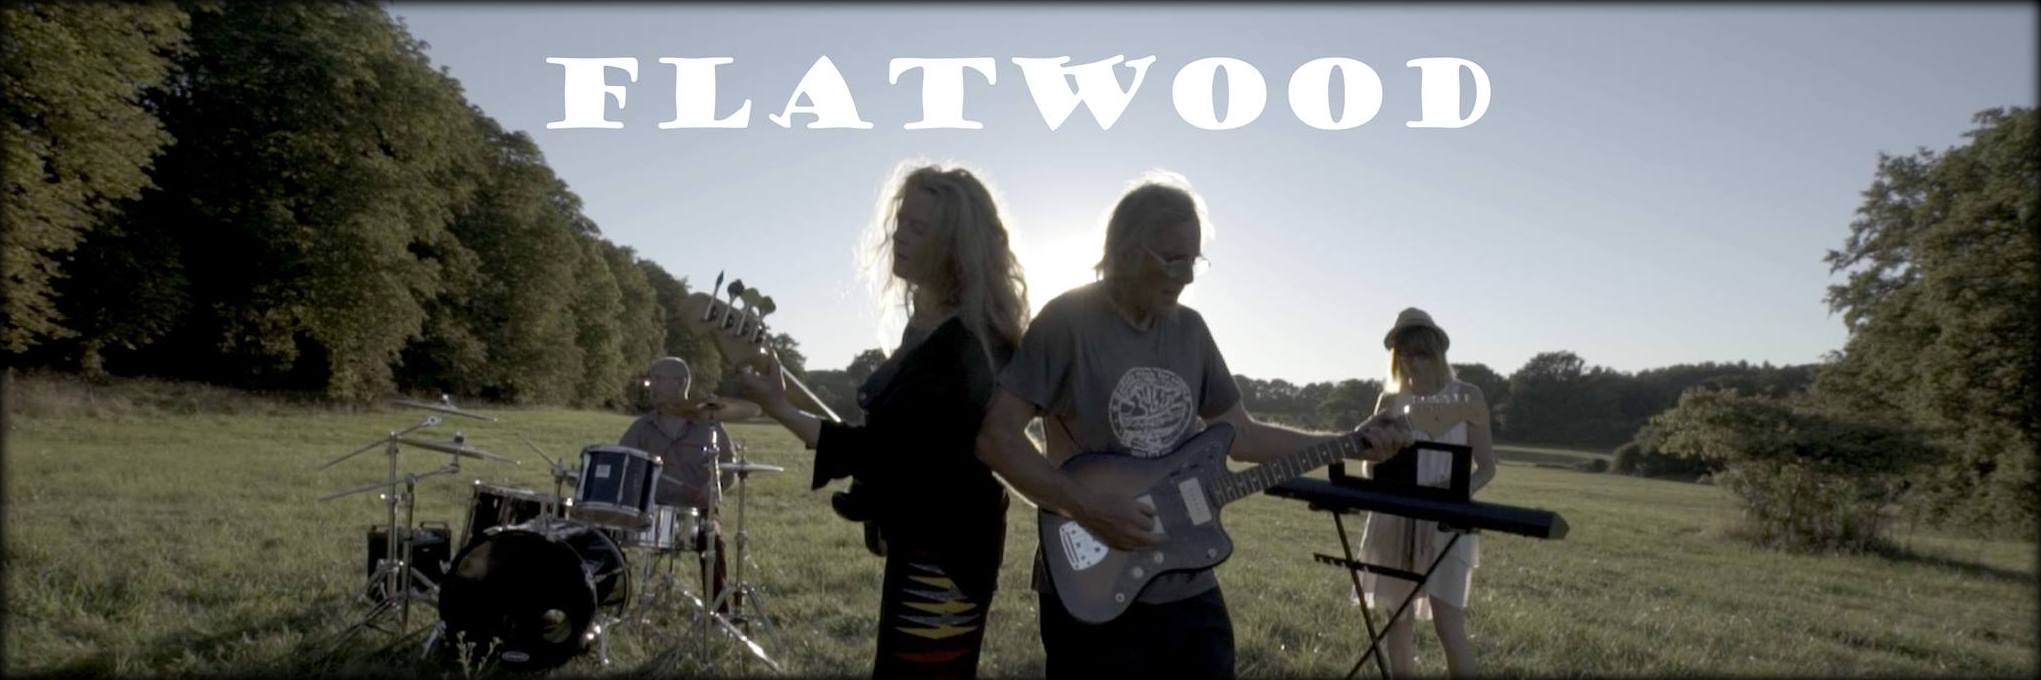 Flatwood